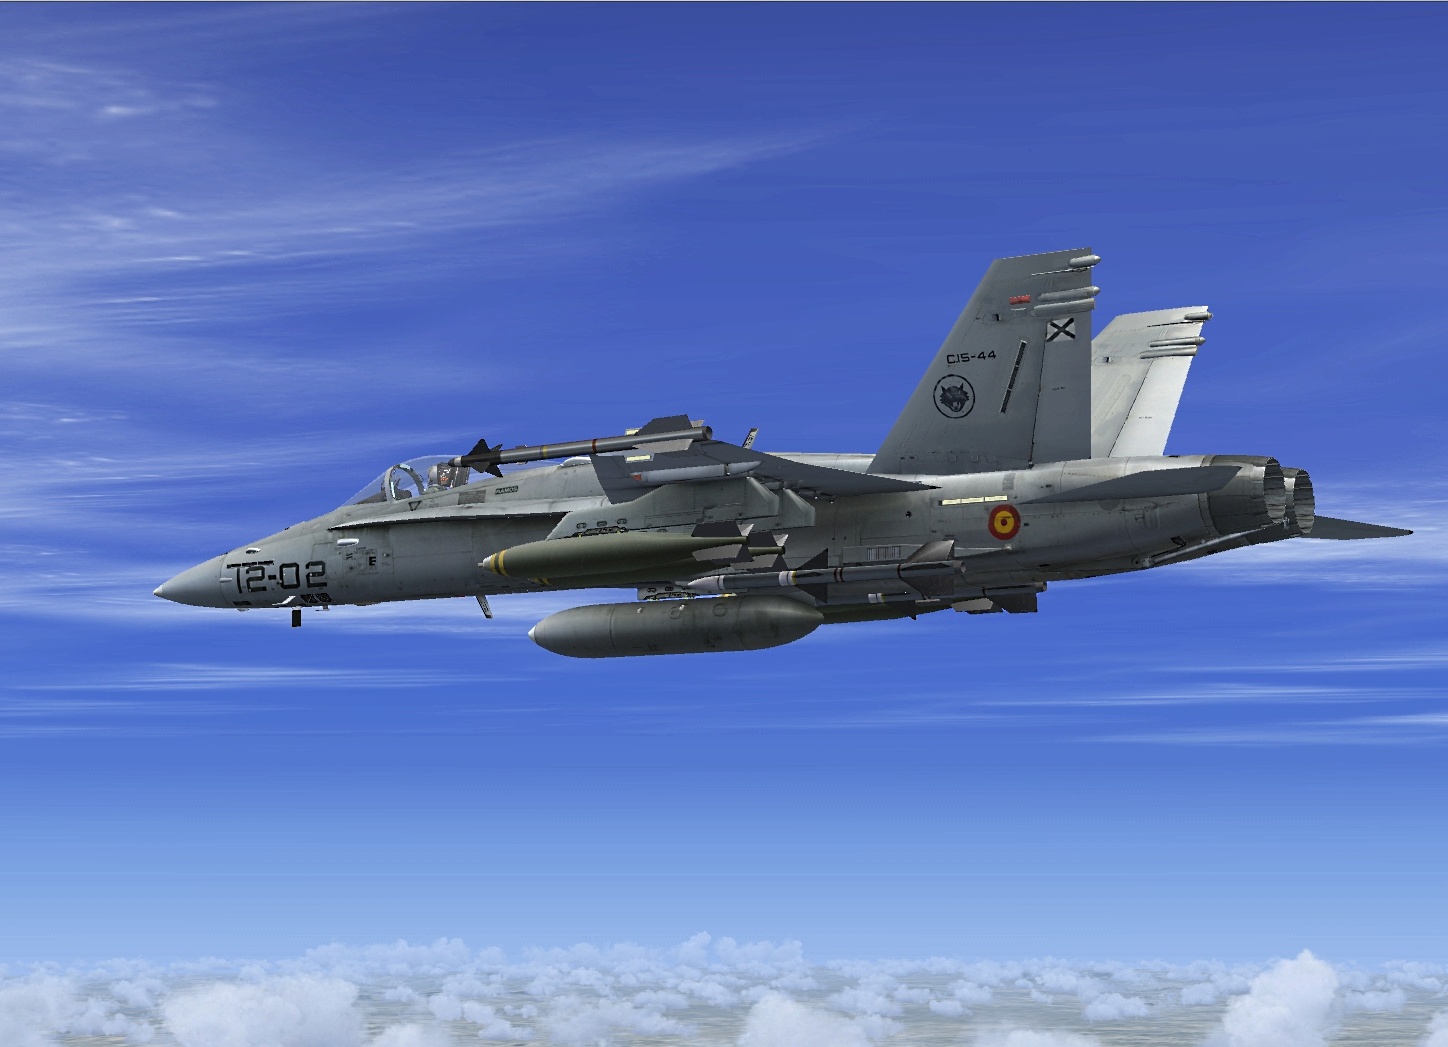 Spain Air Force